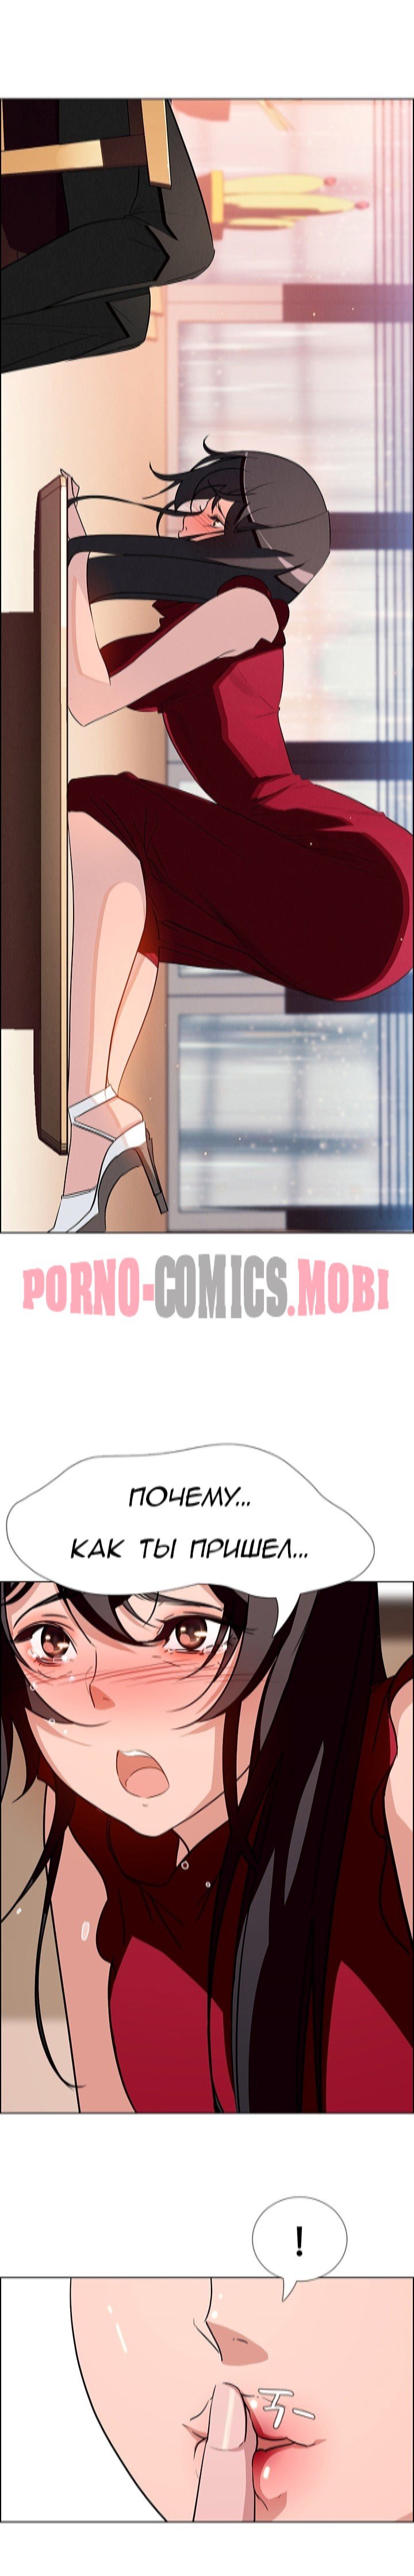 Порно Комикс Занавес от дождя Часть 10-11 смотреть бесплатно онлайн